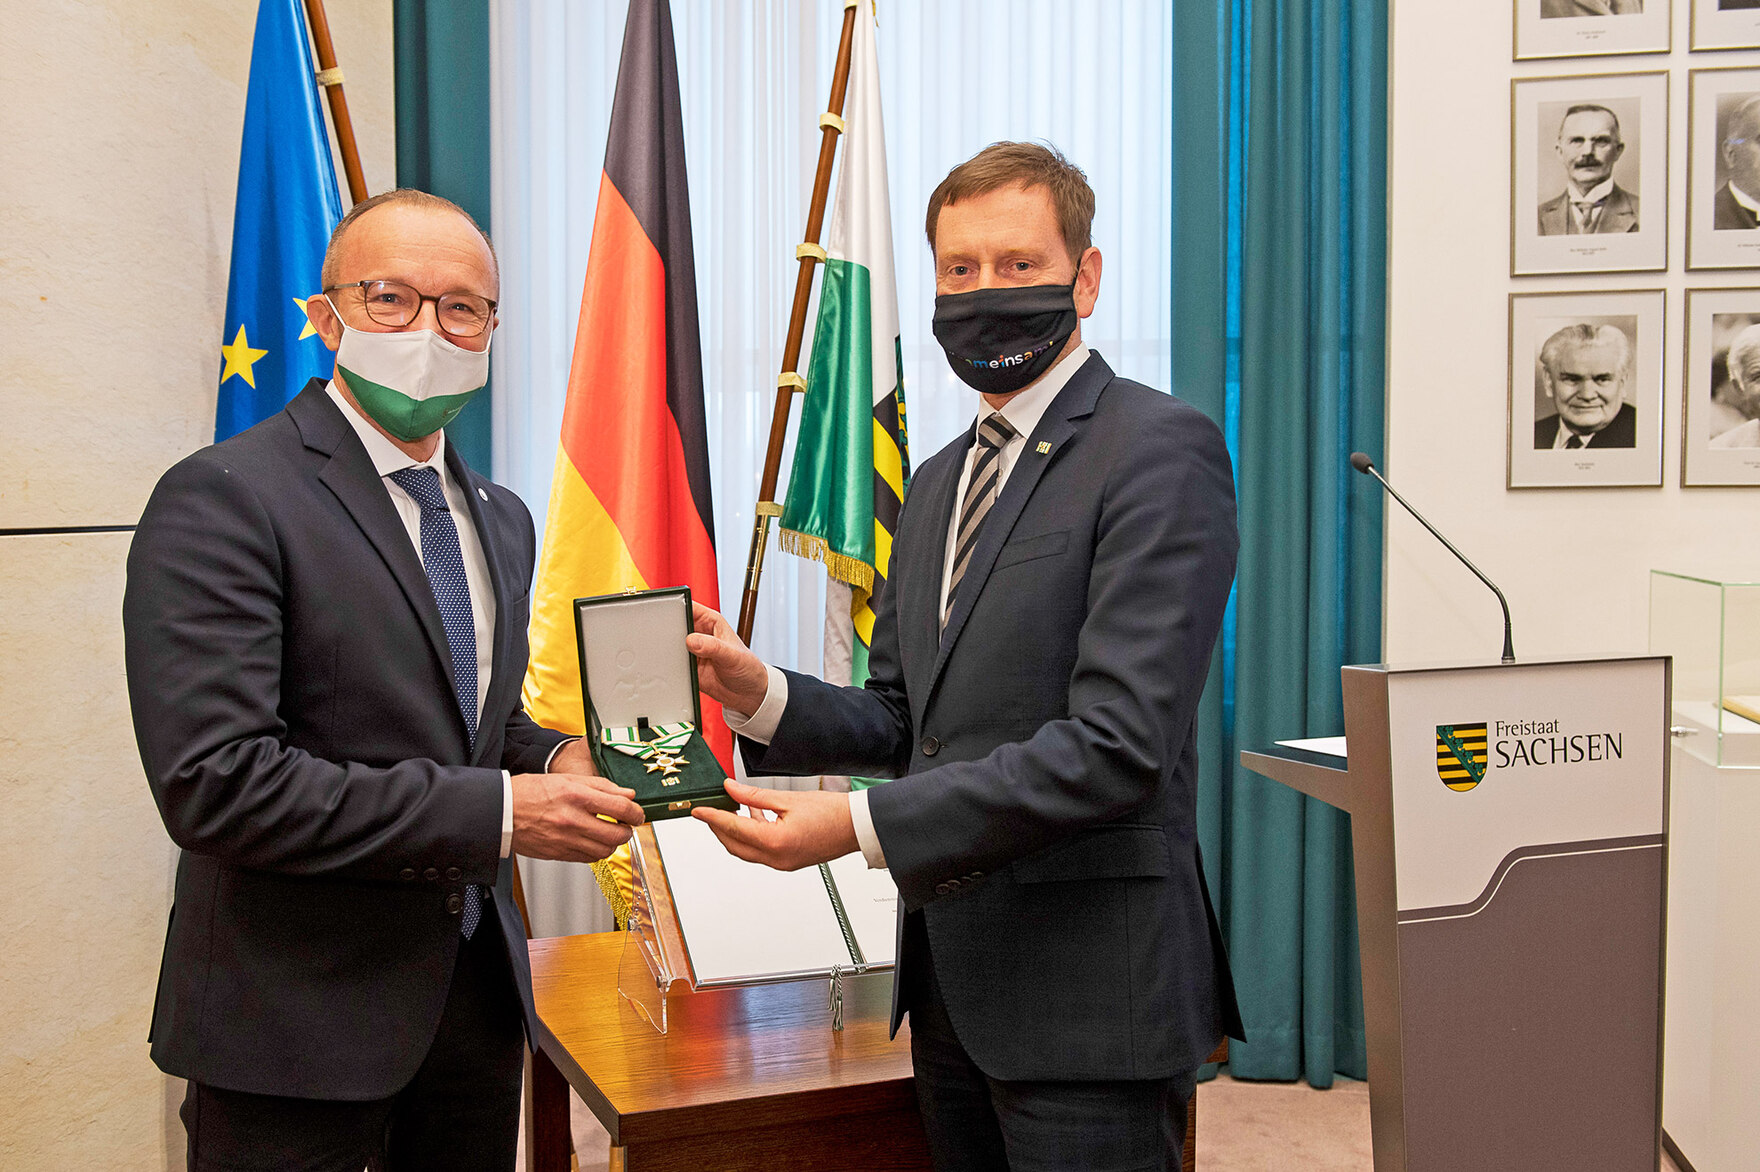 Das Bild zeigt Ministerpräsident Michael Kretschmer mit dem Historiker, Philosophen und Publizisten Dr. Thomas Kunze.